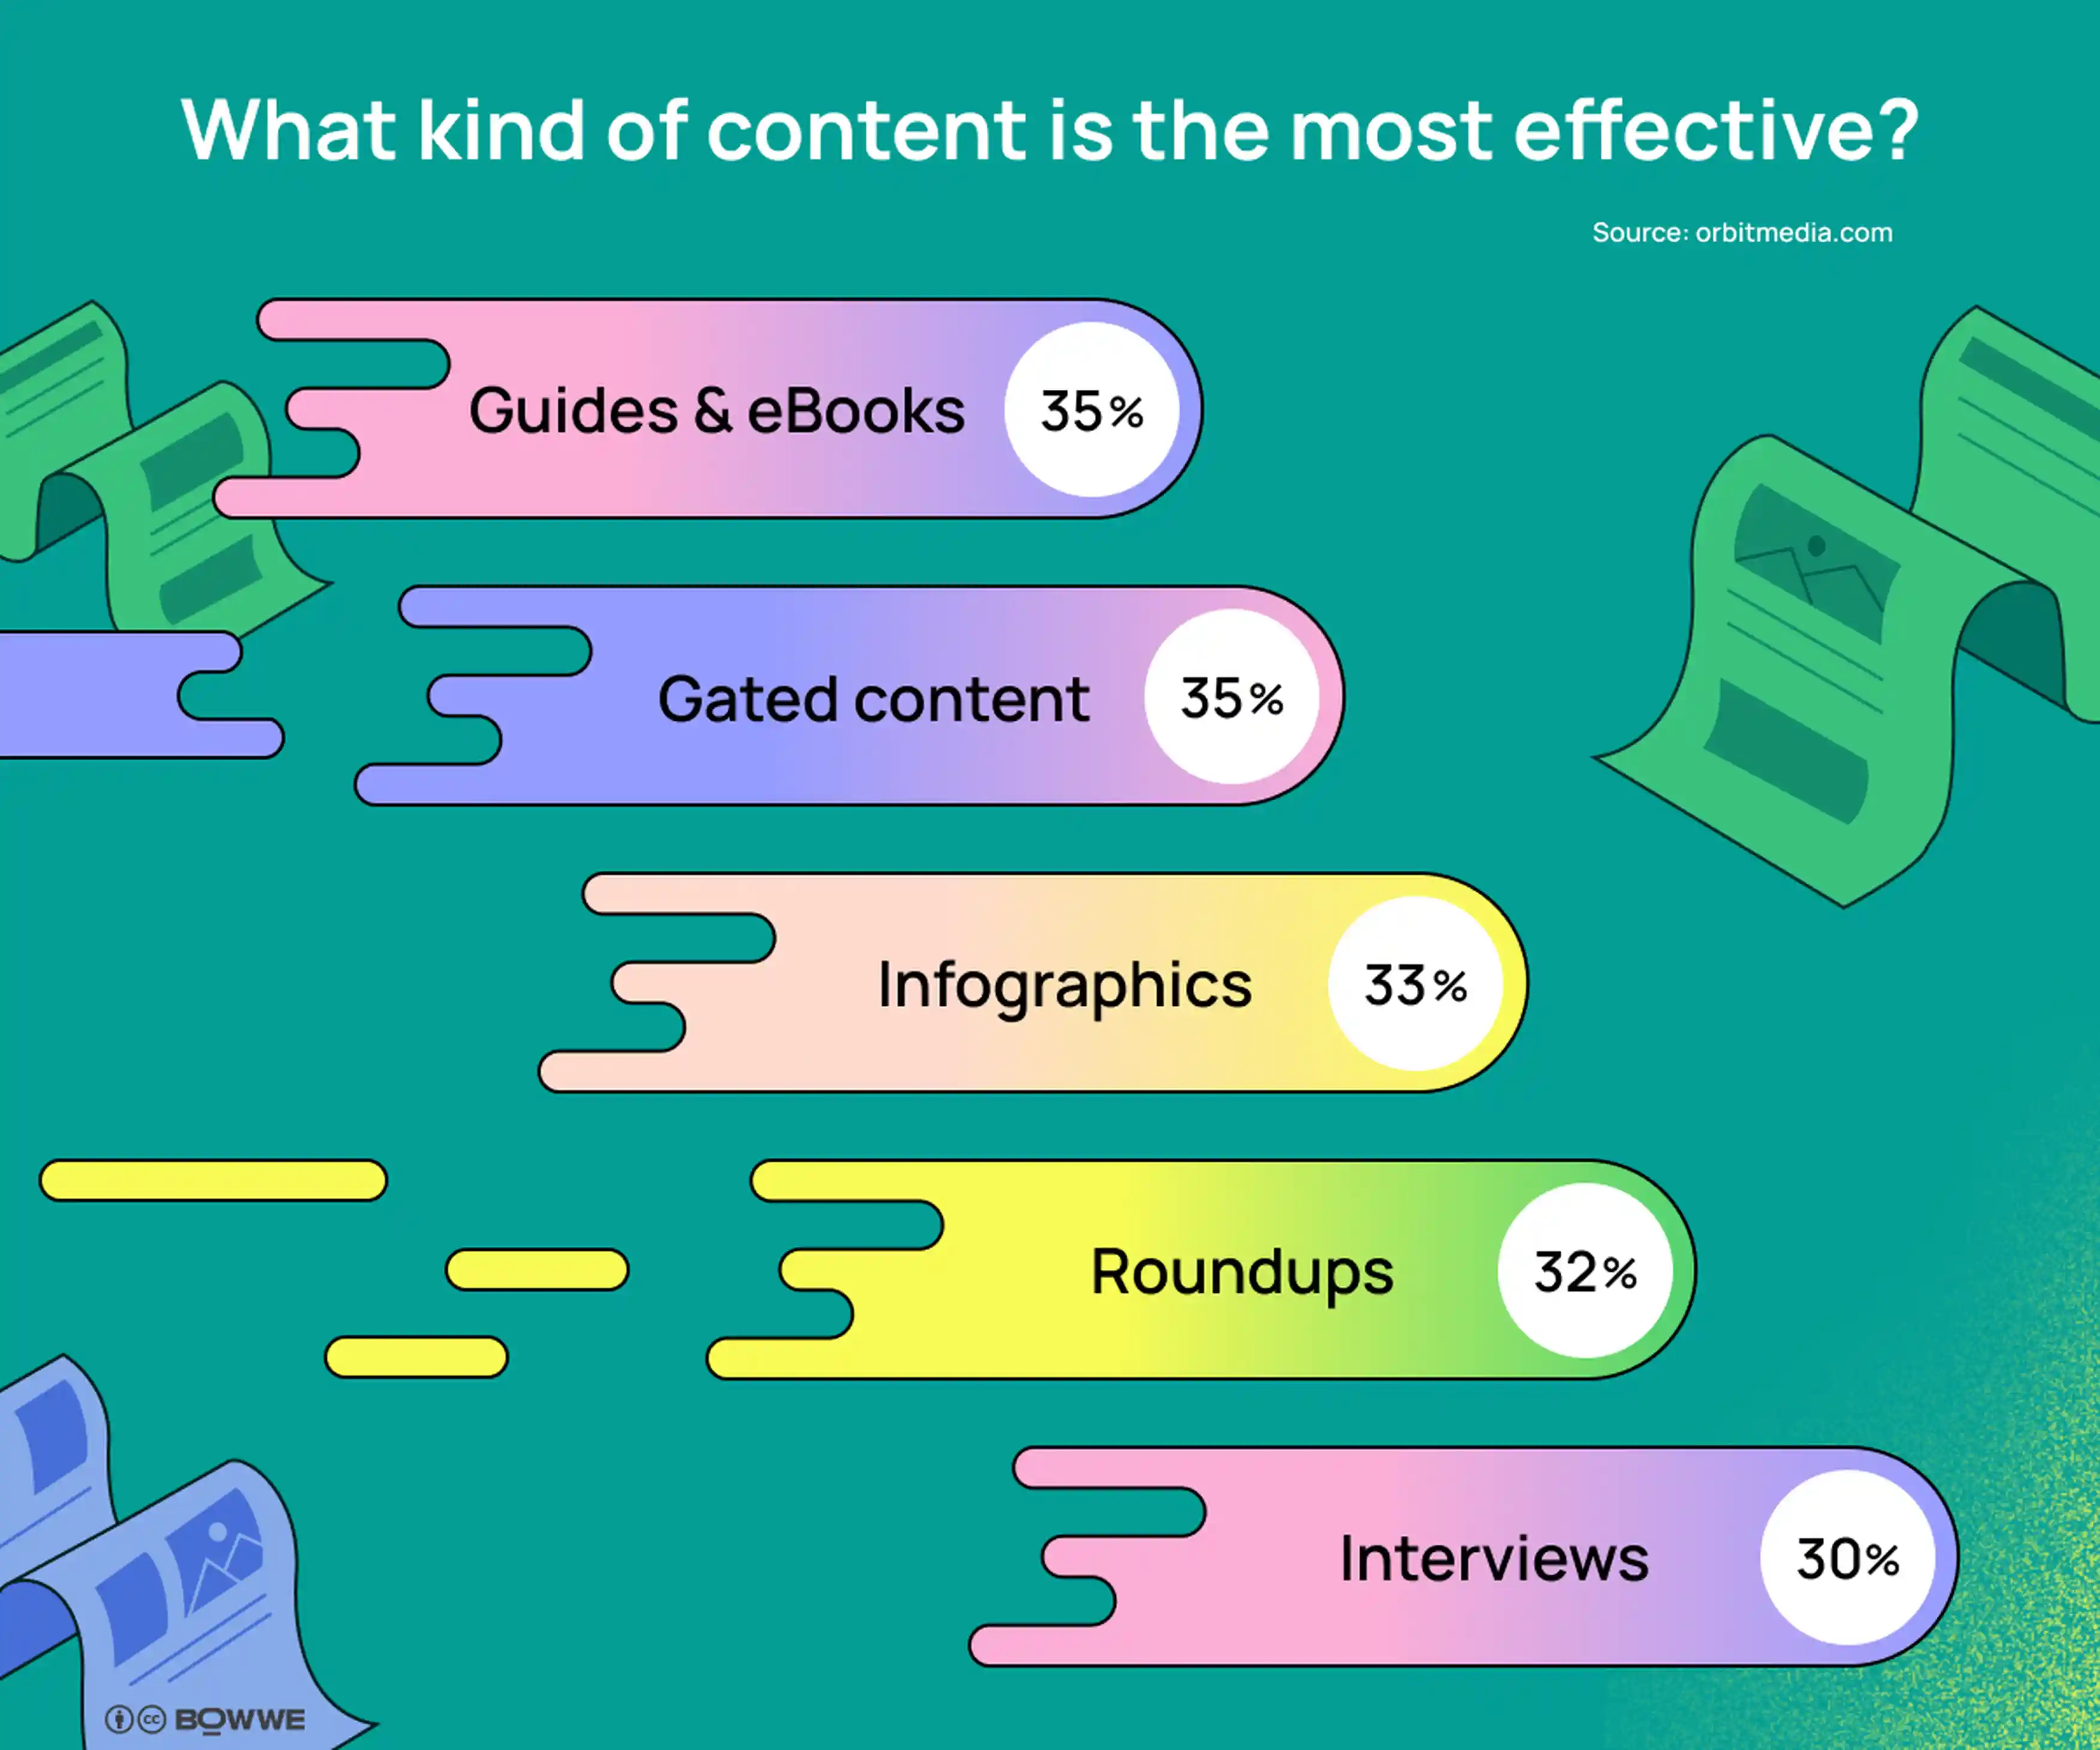 Gráficos com fundo verde claro com 5 gráficos em roxo escuro.  A manchete diz "Que tipo de conteúdo é o mais eficaz?".